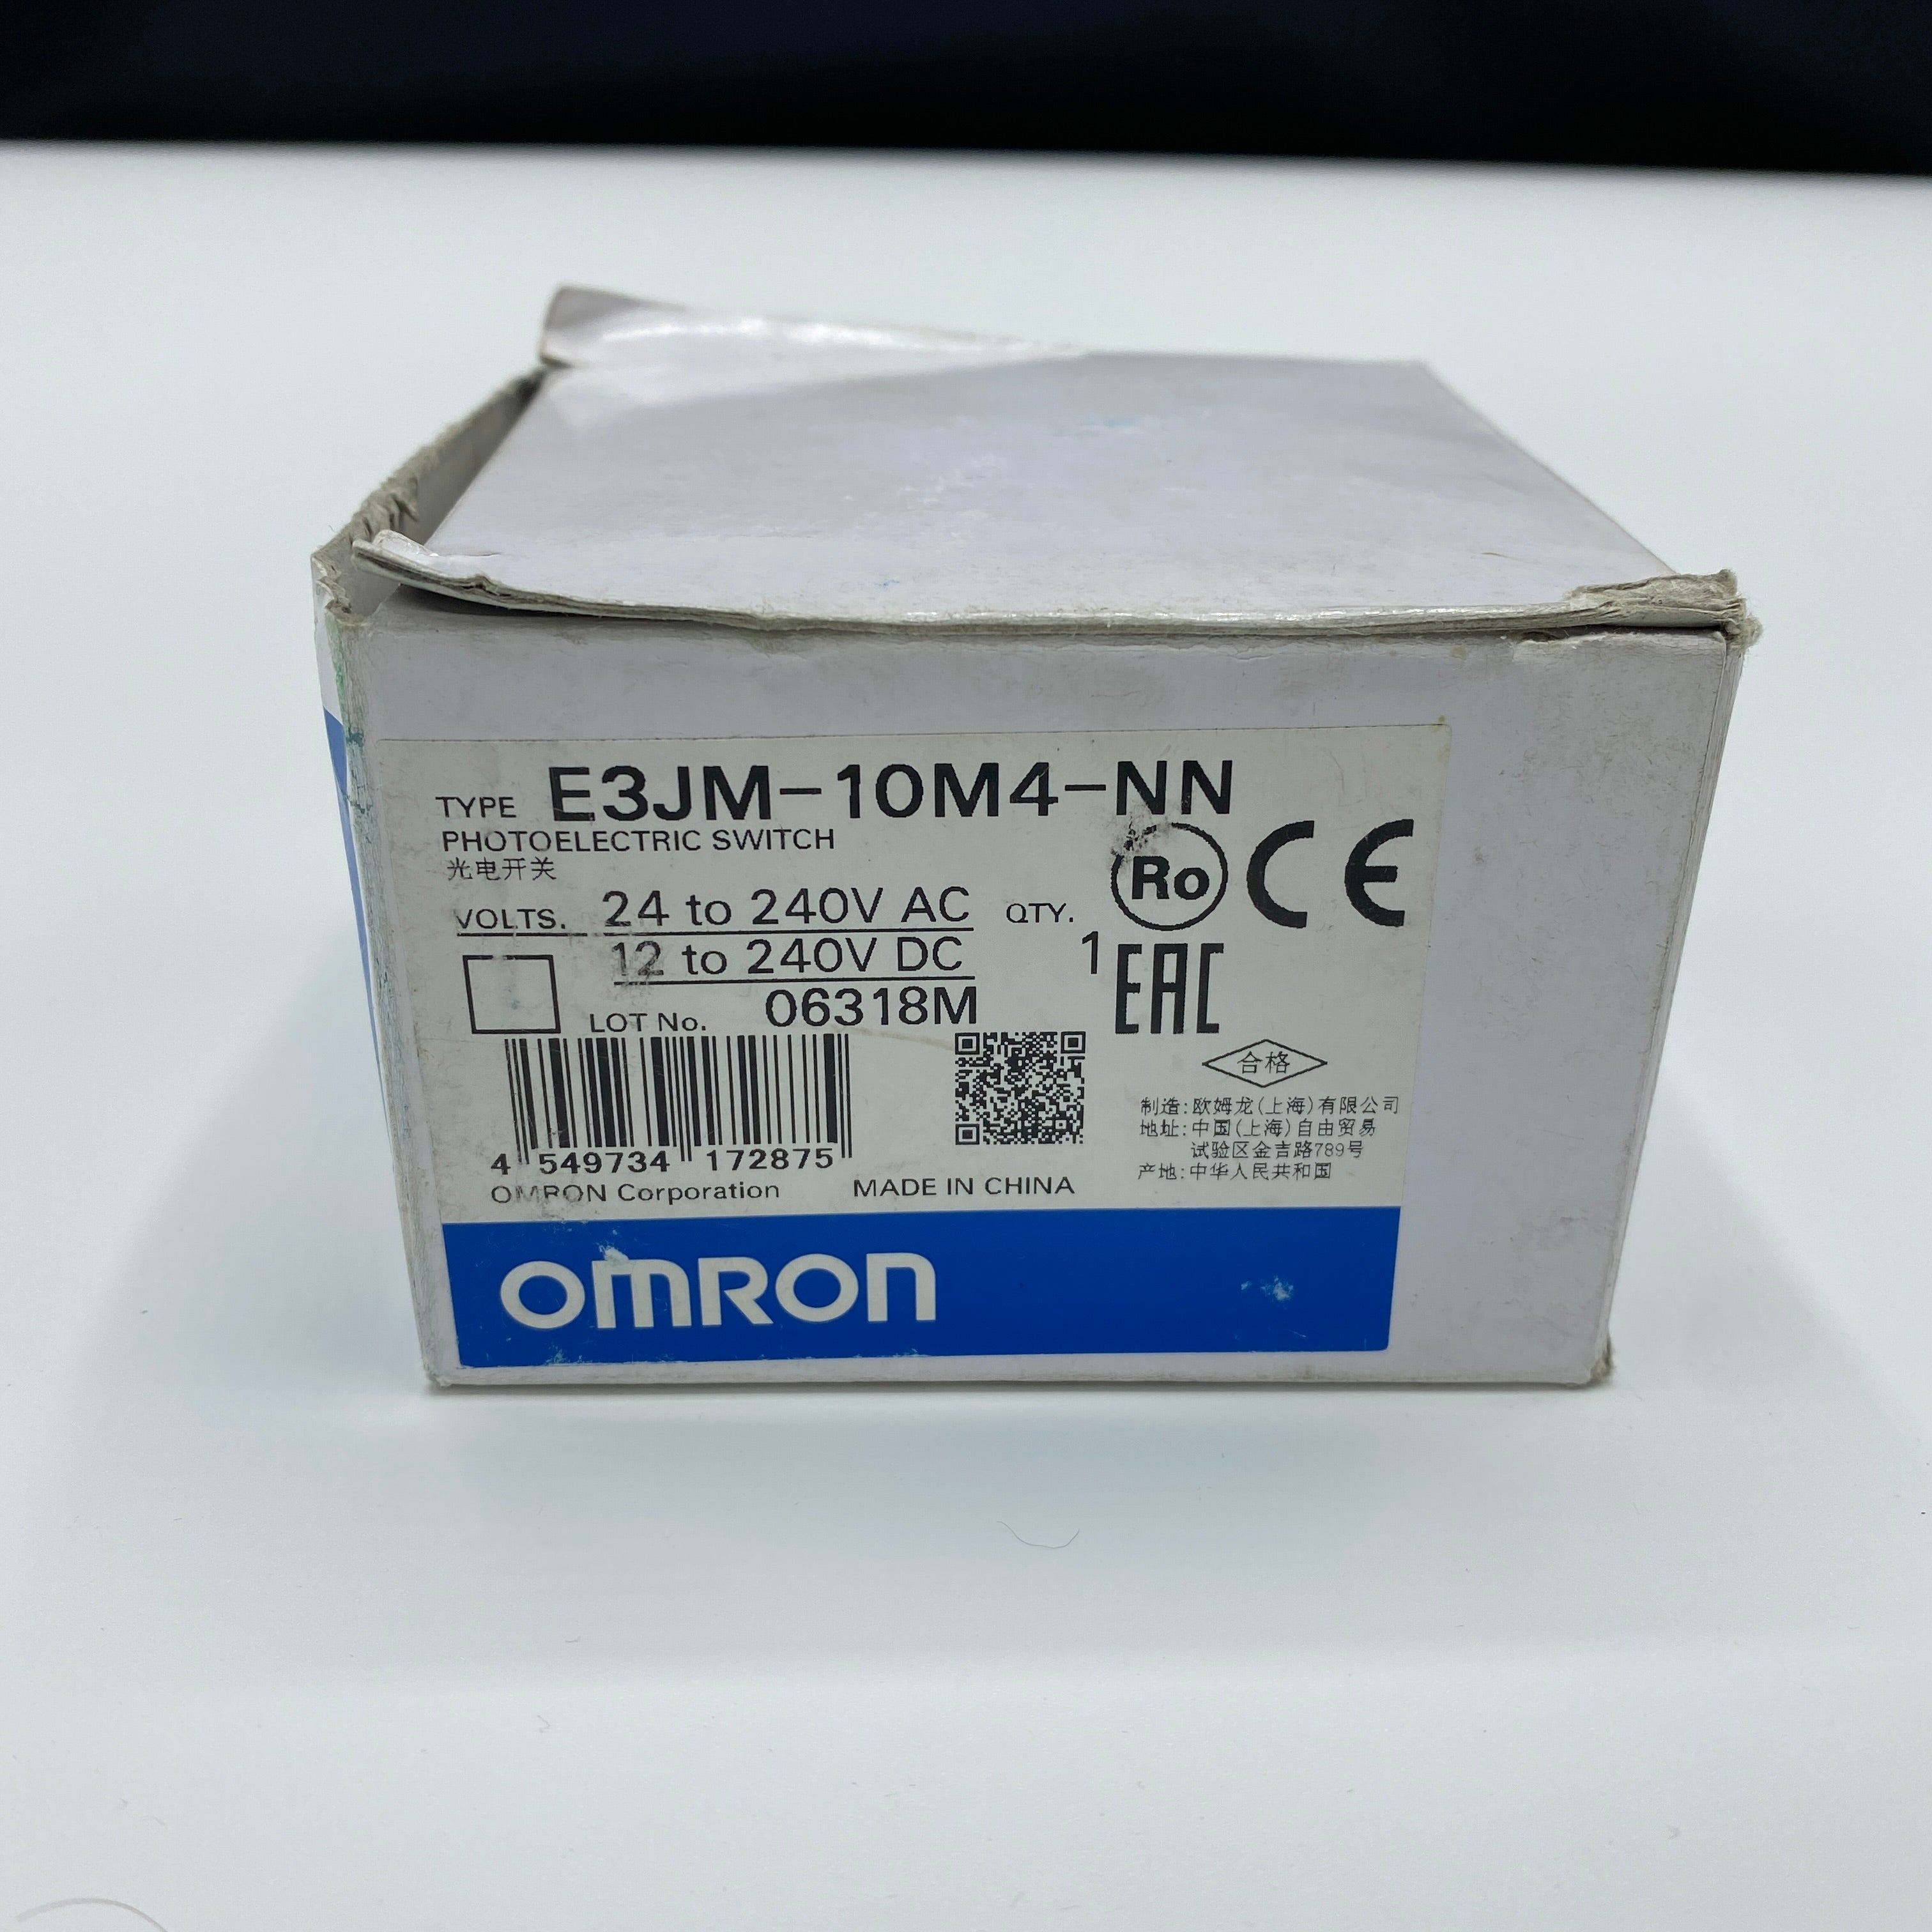 OMRON(オムロン) AC DC電源フリータイプ 光電センサ E3JM-10M4-NN - 1